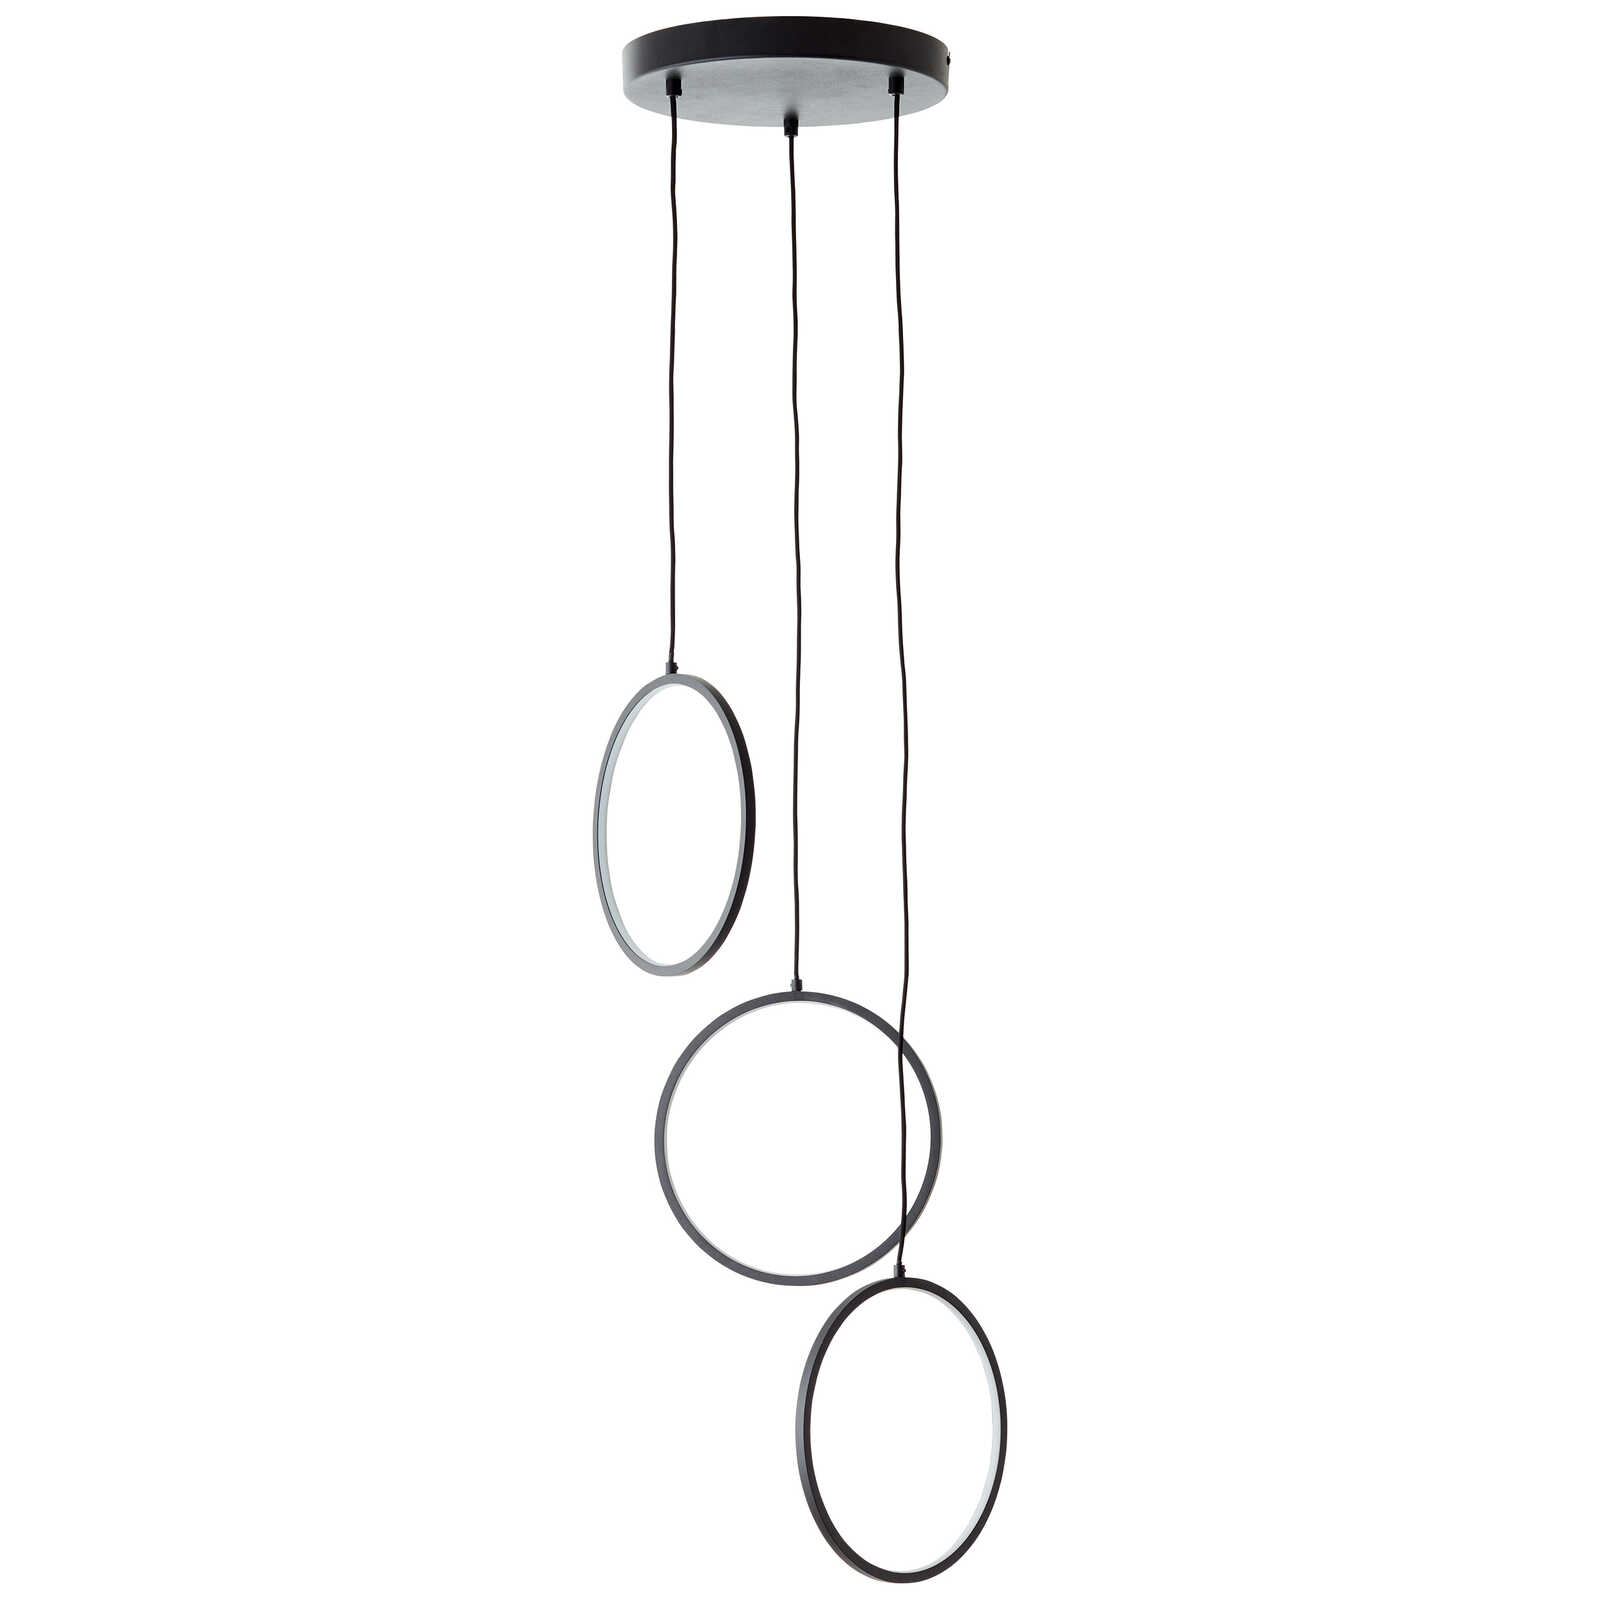             Metalen hanglamp - Elea 4 - Zwart
        